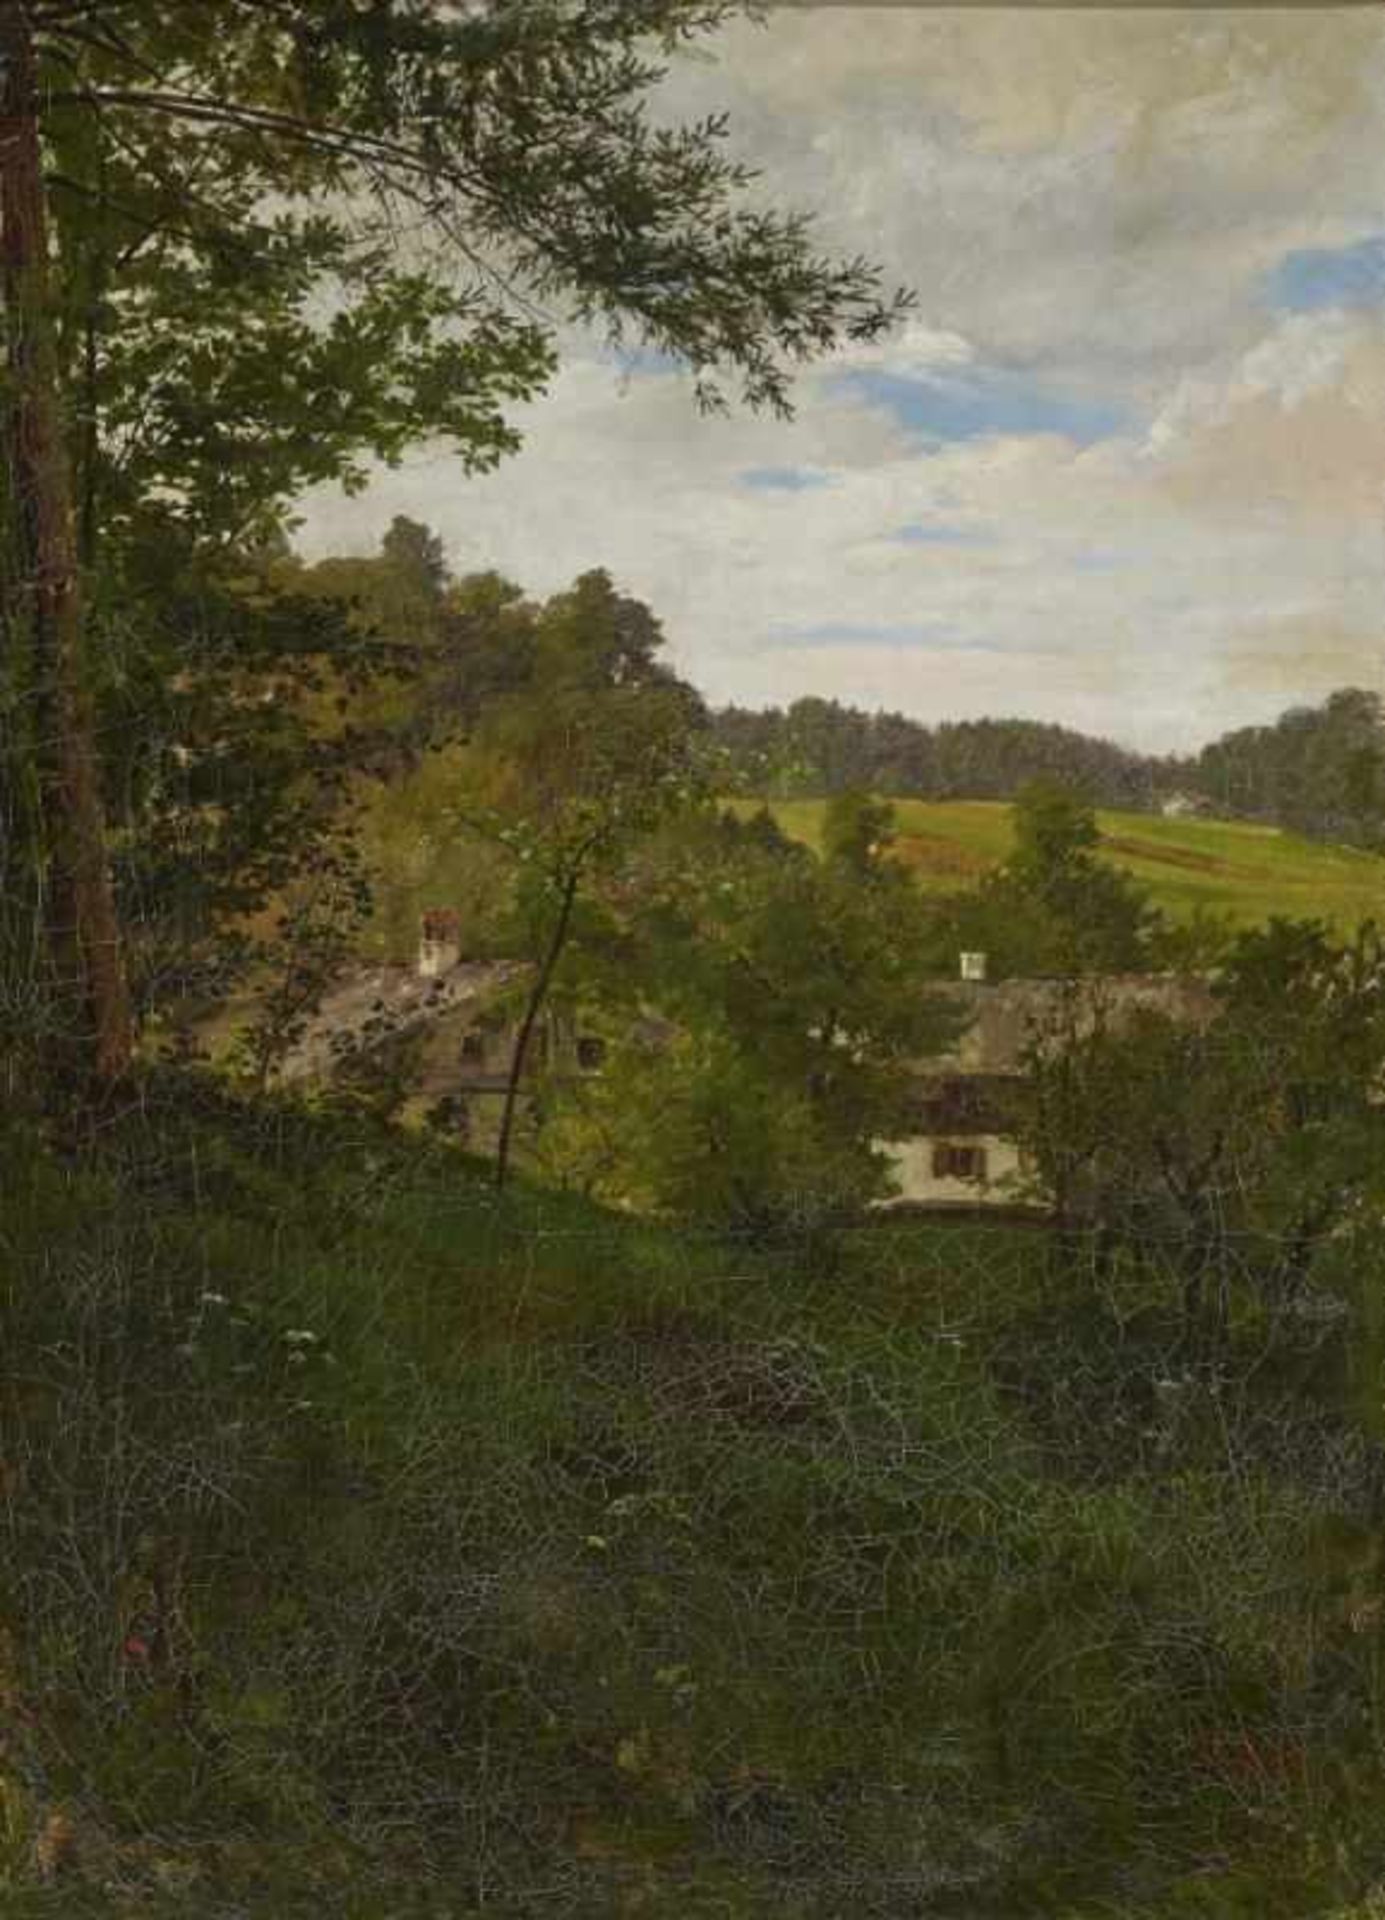 SPERL, JOHANN 1840 Buch b. Fürth - 1914 Bad Aibling Oberbayerische Landschaft mit Bauerngehöft R. u.